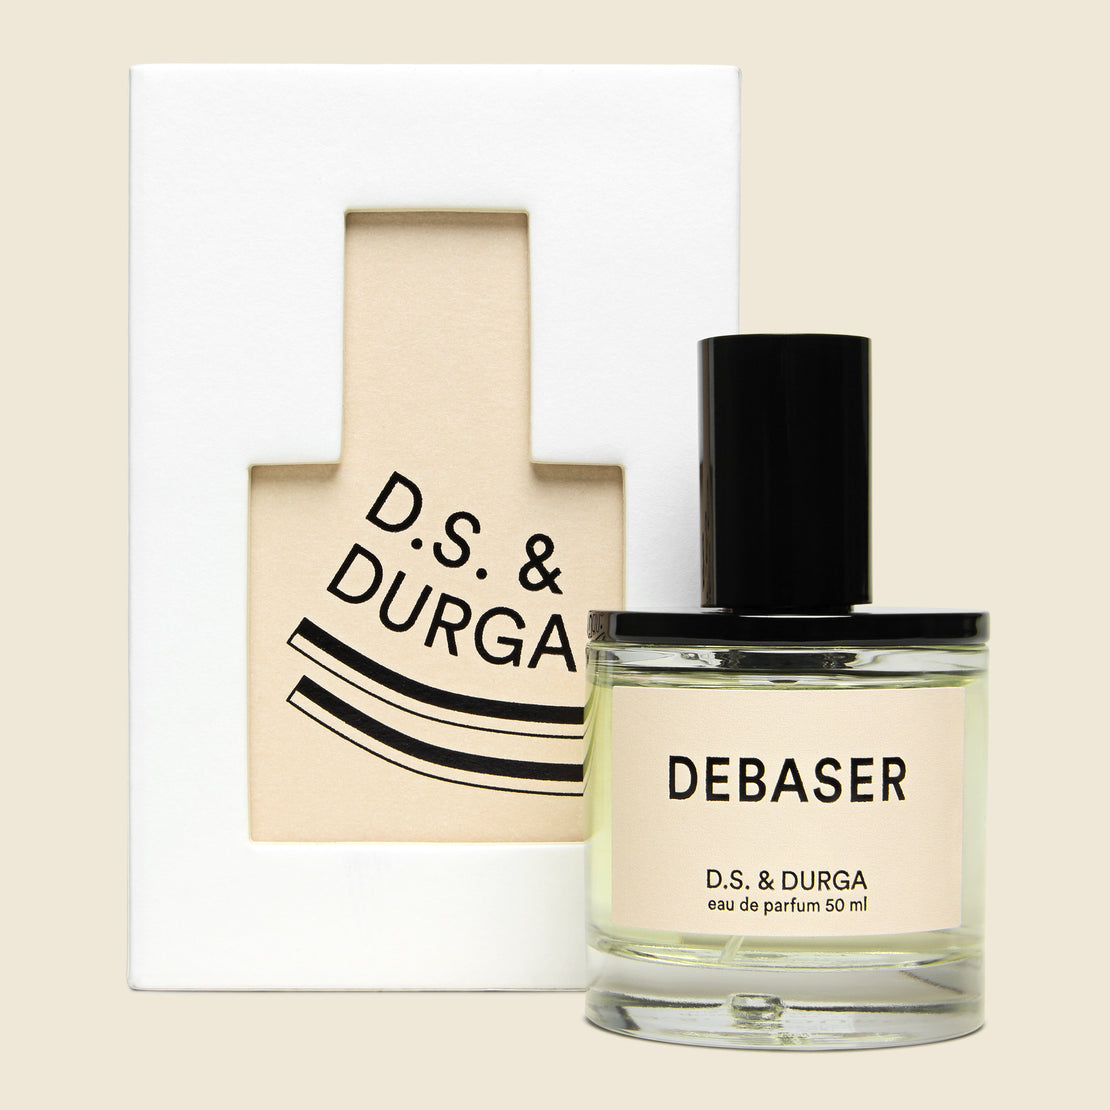 D.S. & Durga Debaser Eau de Parfum